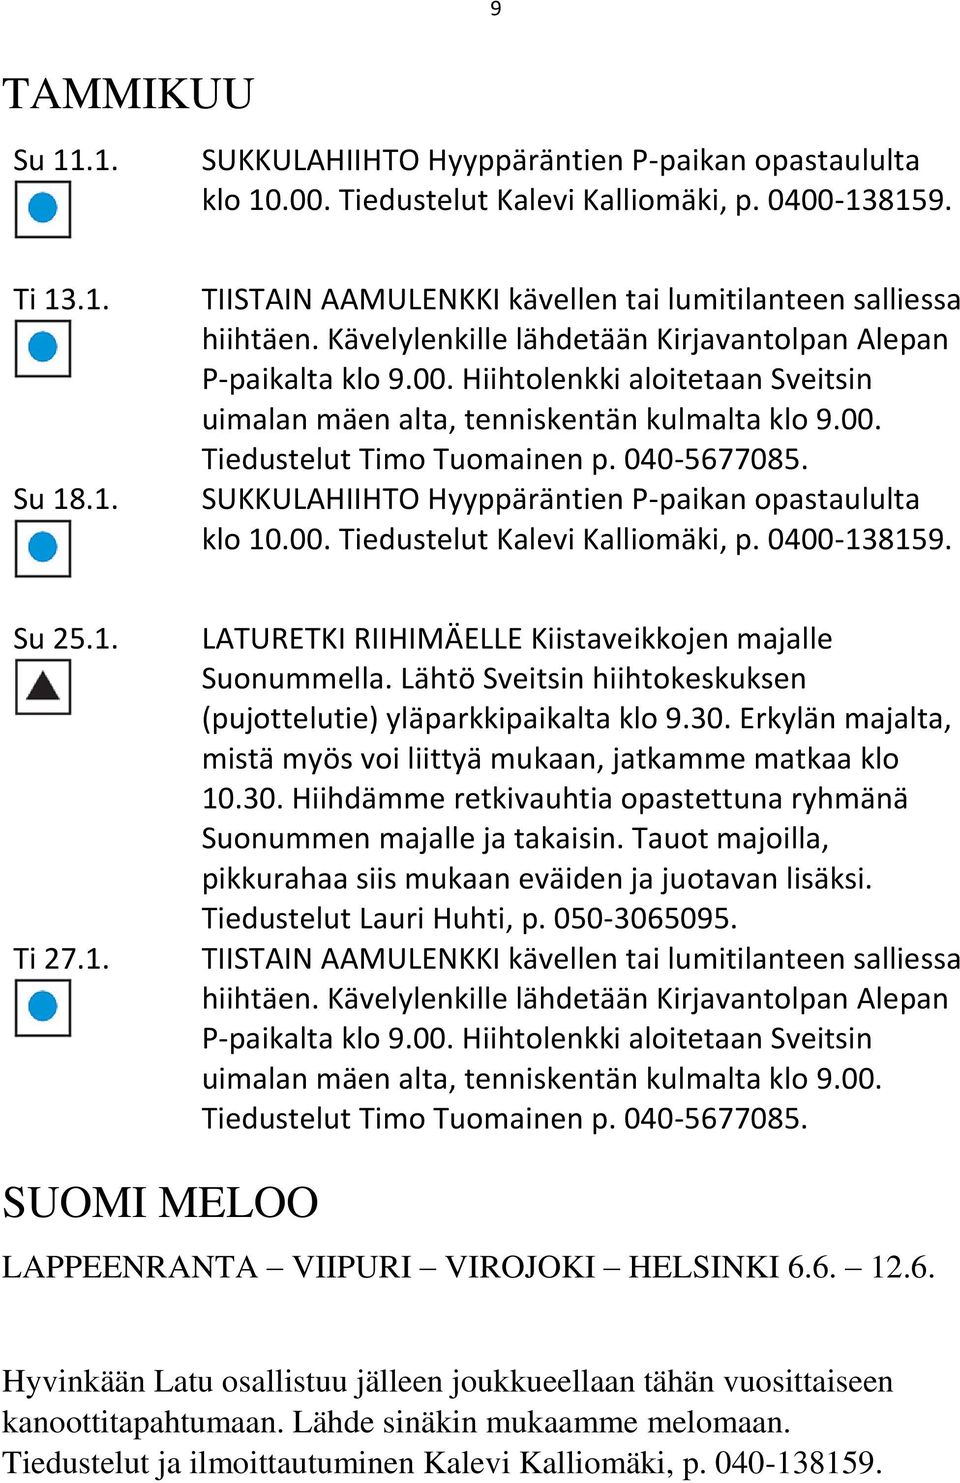 SUKKULAHIIHTO Hyyppäräntien P-paikan opastaululta klo 10.00. Tiedustelut Kalevi Kalliomäki, p. 0400-138159. Su 25.1. Ti 27.1. LATURETKI RIIHIMÄELLE Kiistaveikkojen majalle Suonummella.